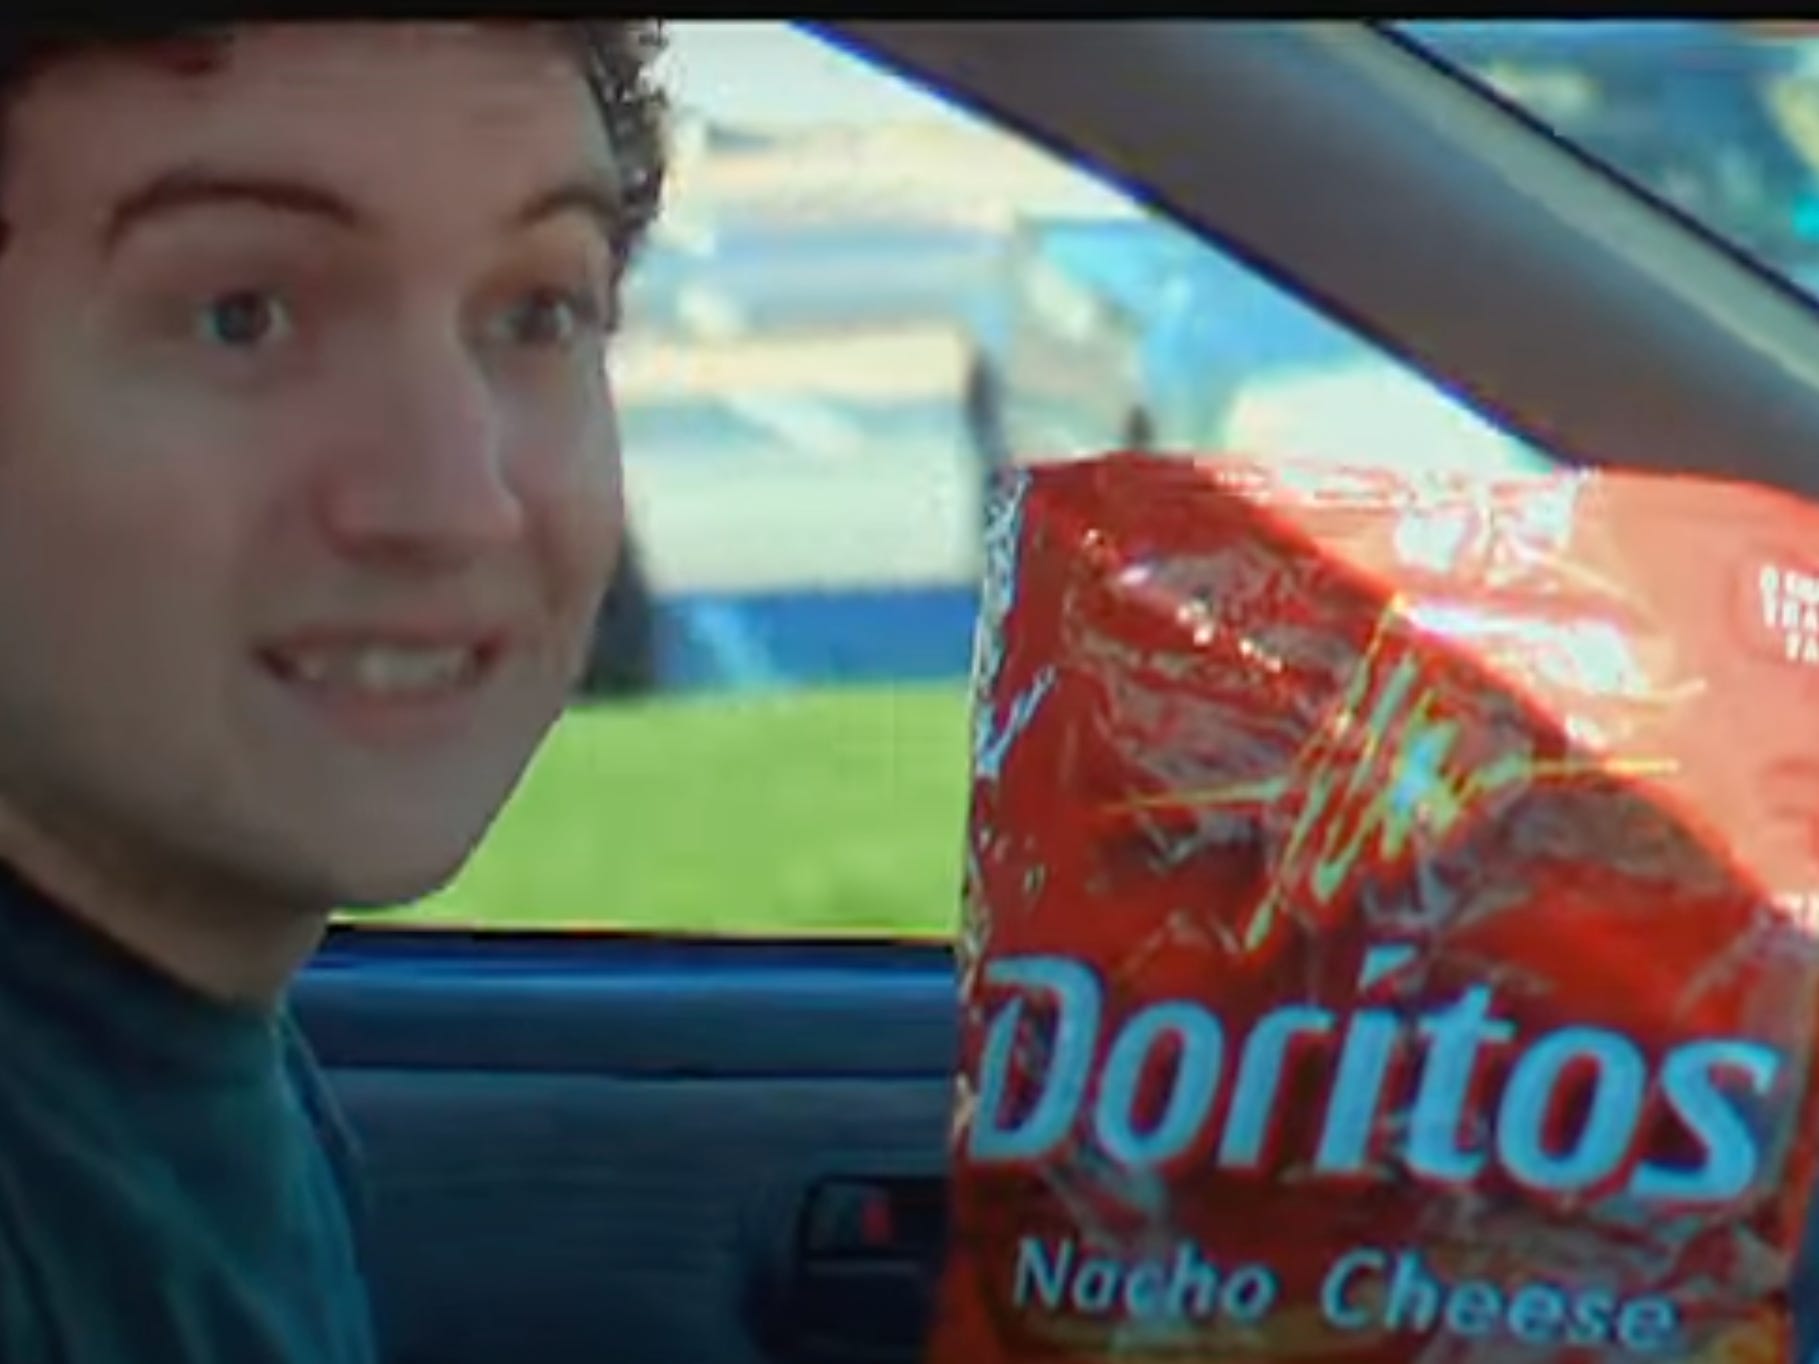 Mann lächelt, während er fährt, während er eine Tüte Doritos in der Hand hält.